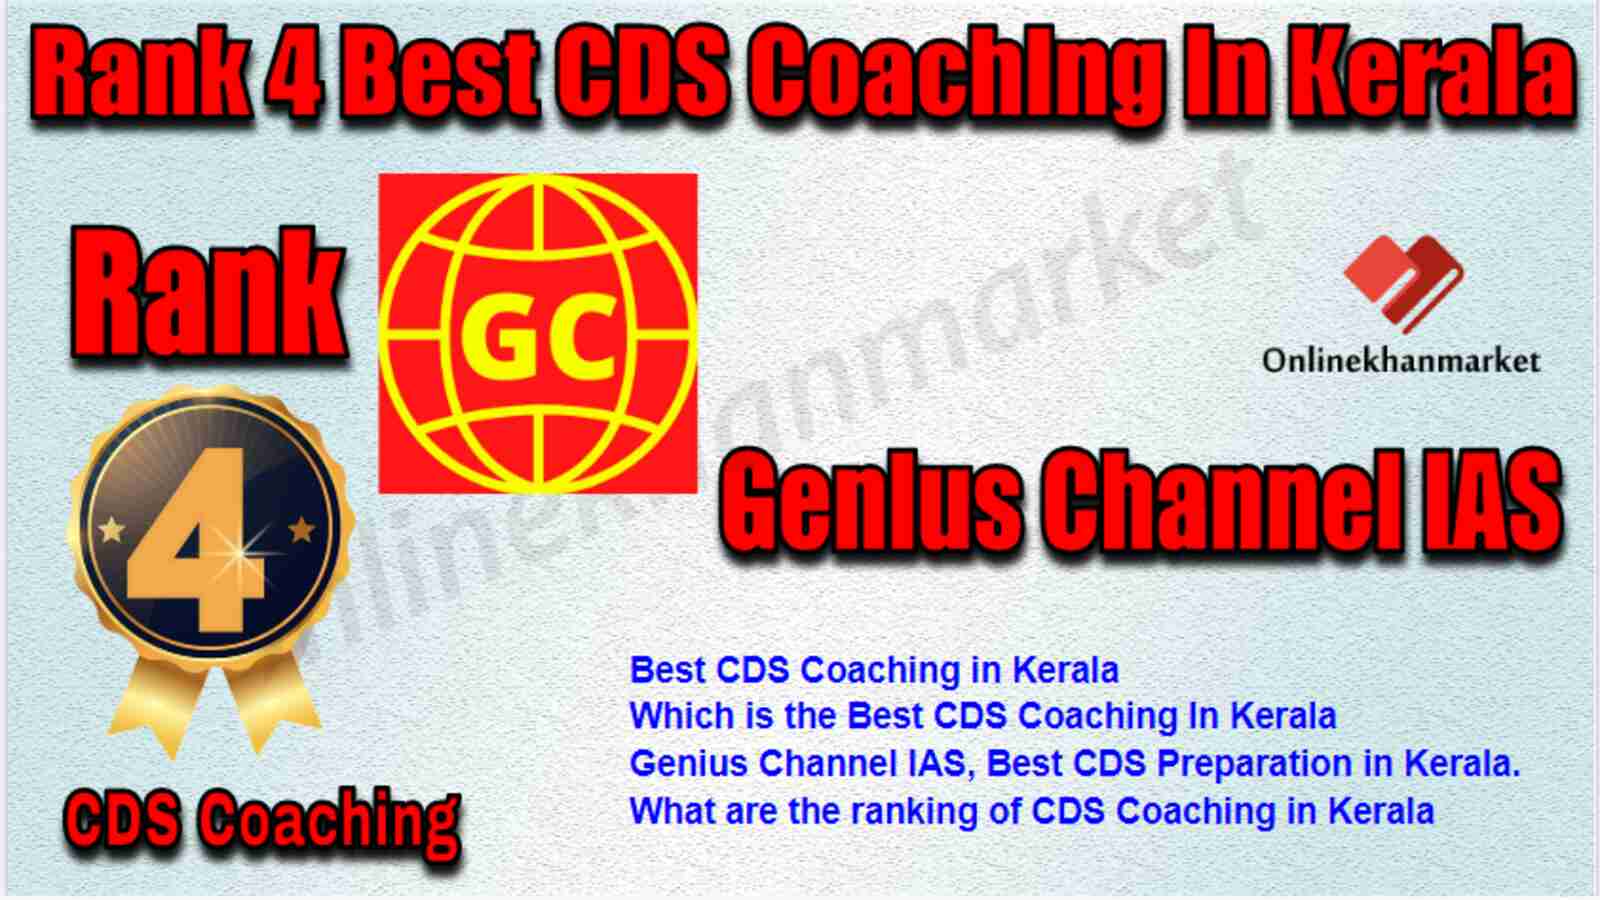 Rank 4 best CDS Coaching in Kerala